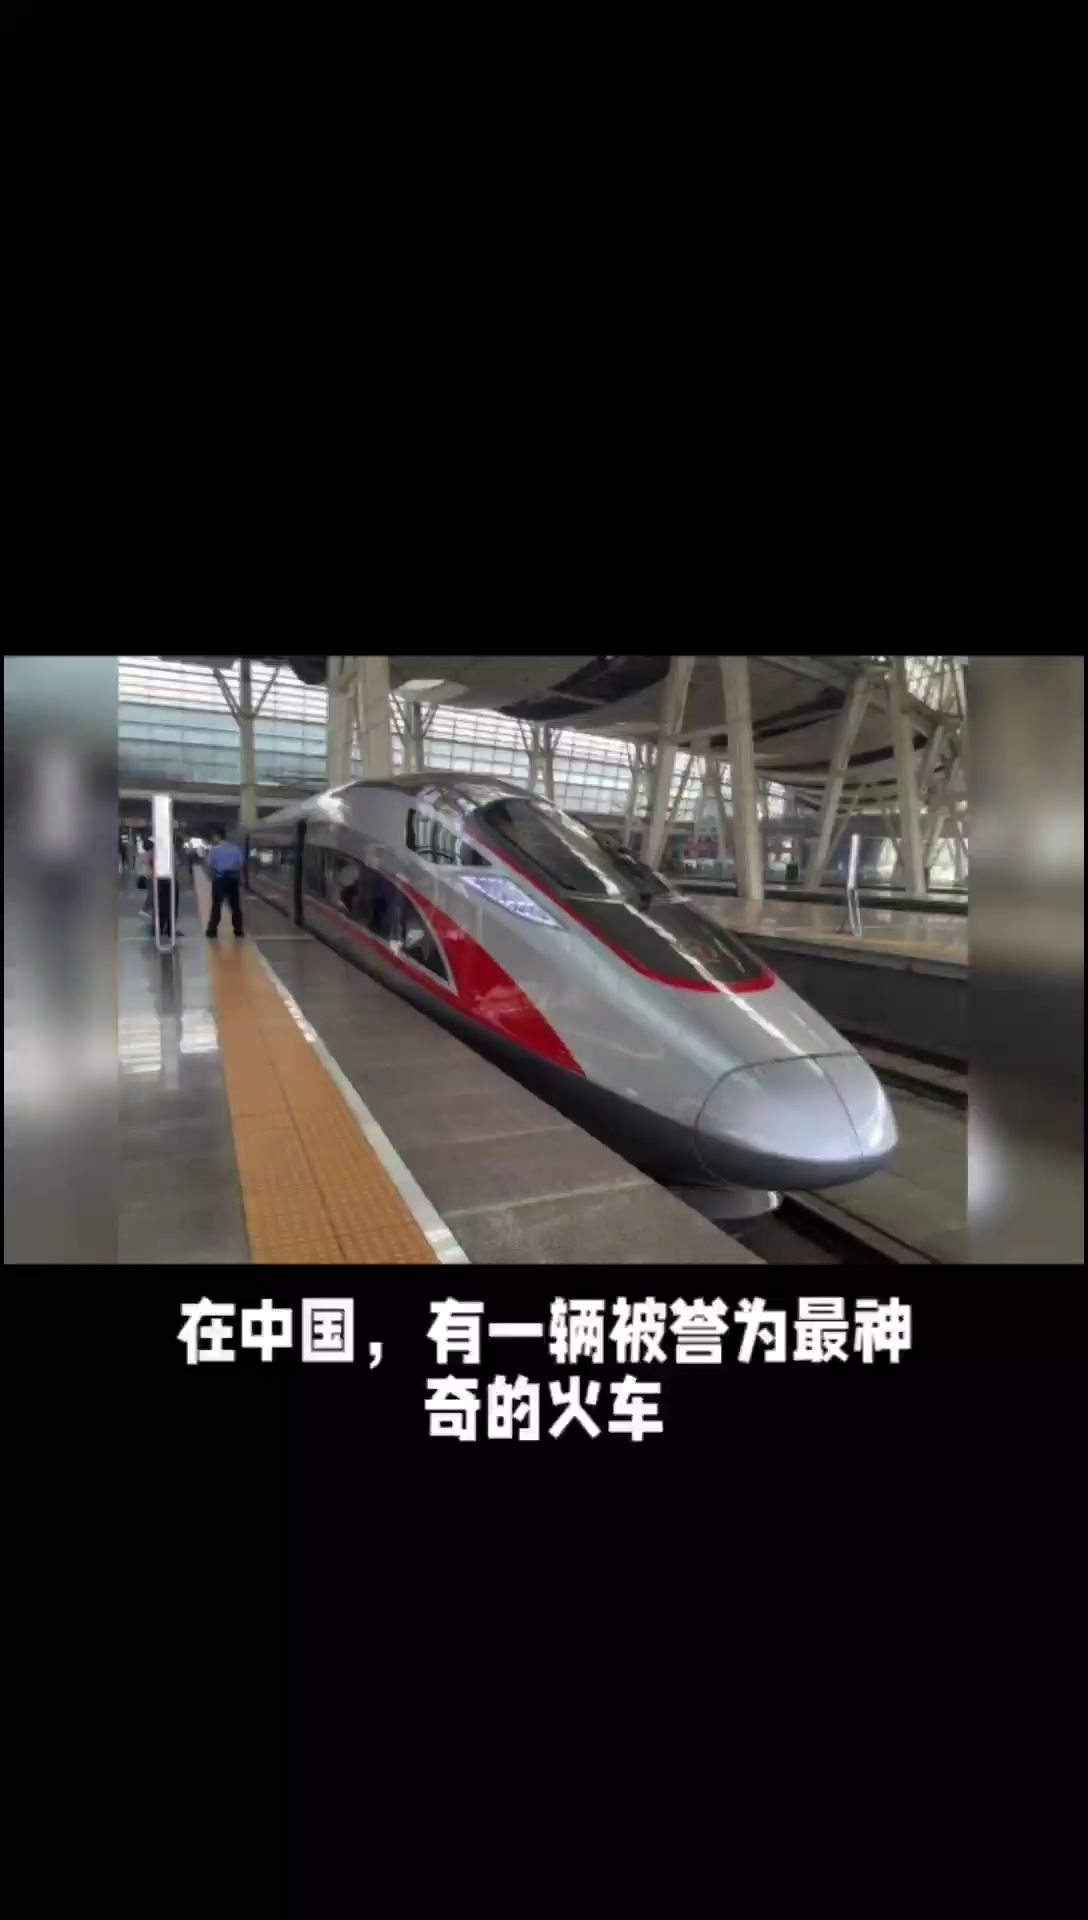 穿越时空的神秘列车——中国最神奇的火车